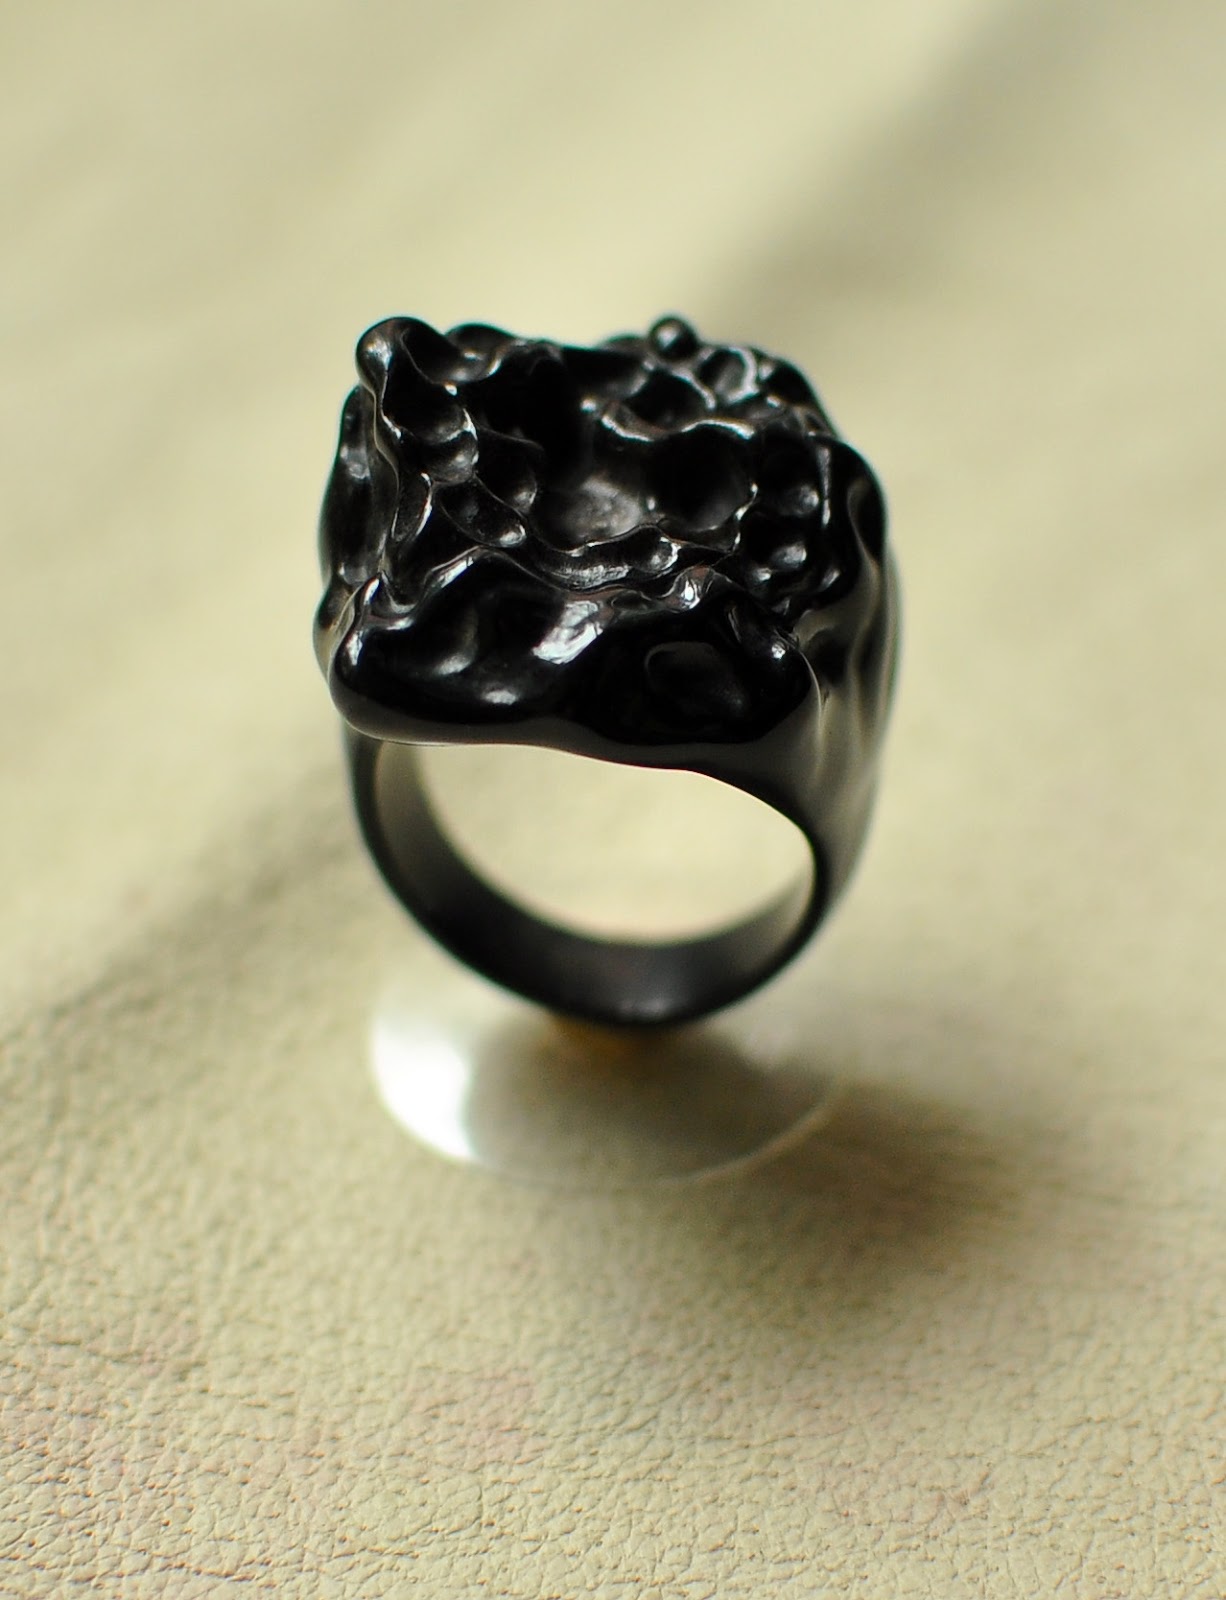 заказать резьбу, carved ring, авторские украшения, модерн, роговое, перстень, резьба, морская, кольцо, ювелирные изделия, 